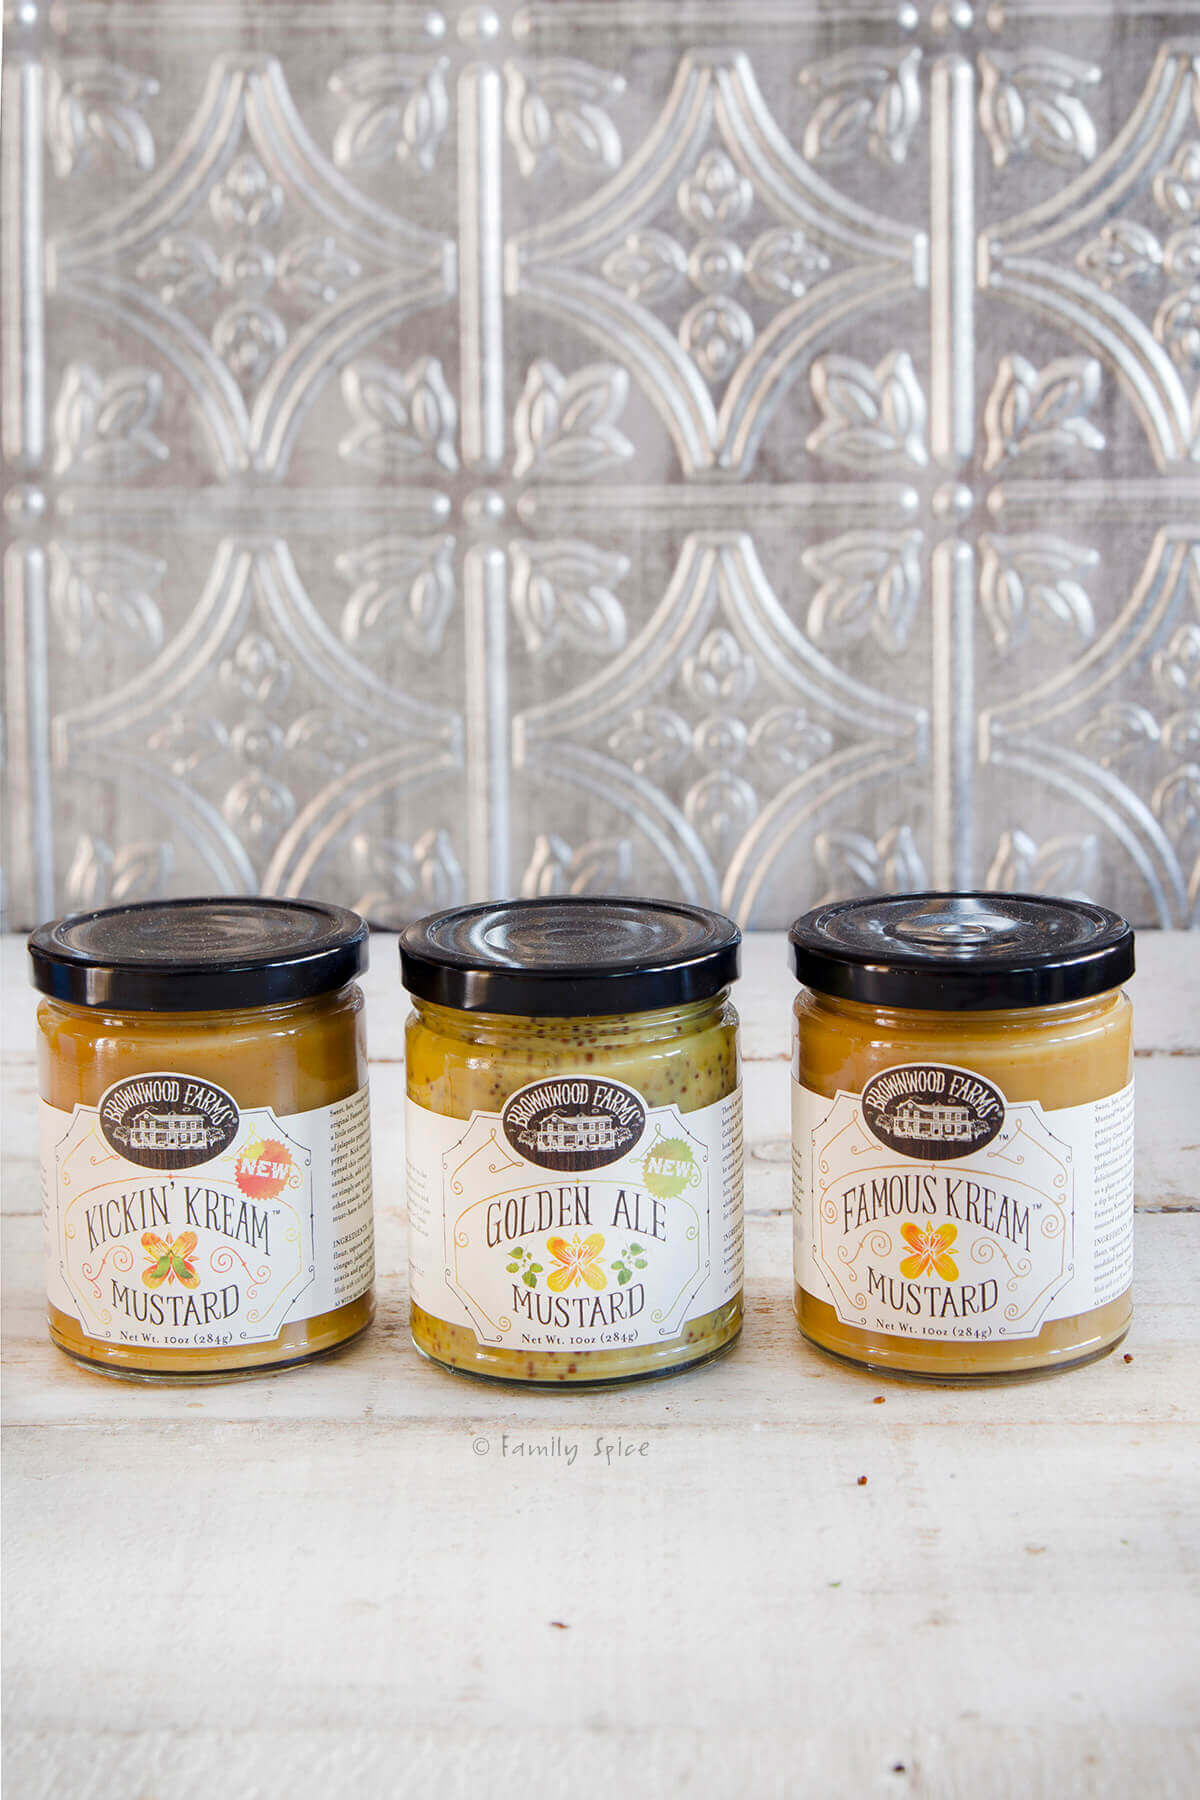 Three Brownwood Farms Mustard jars